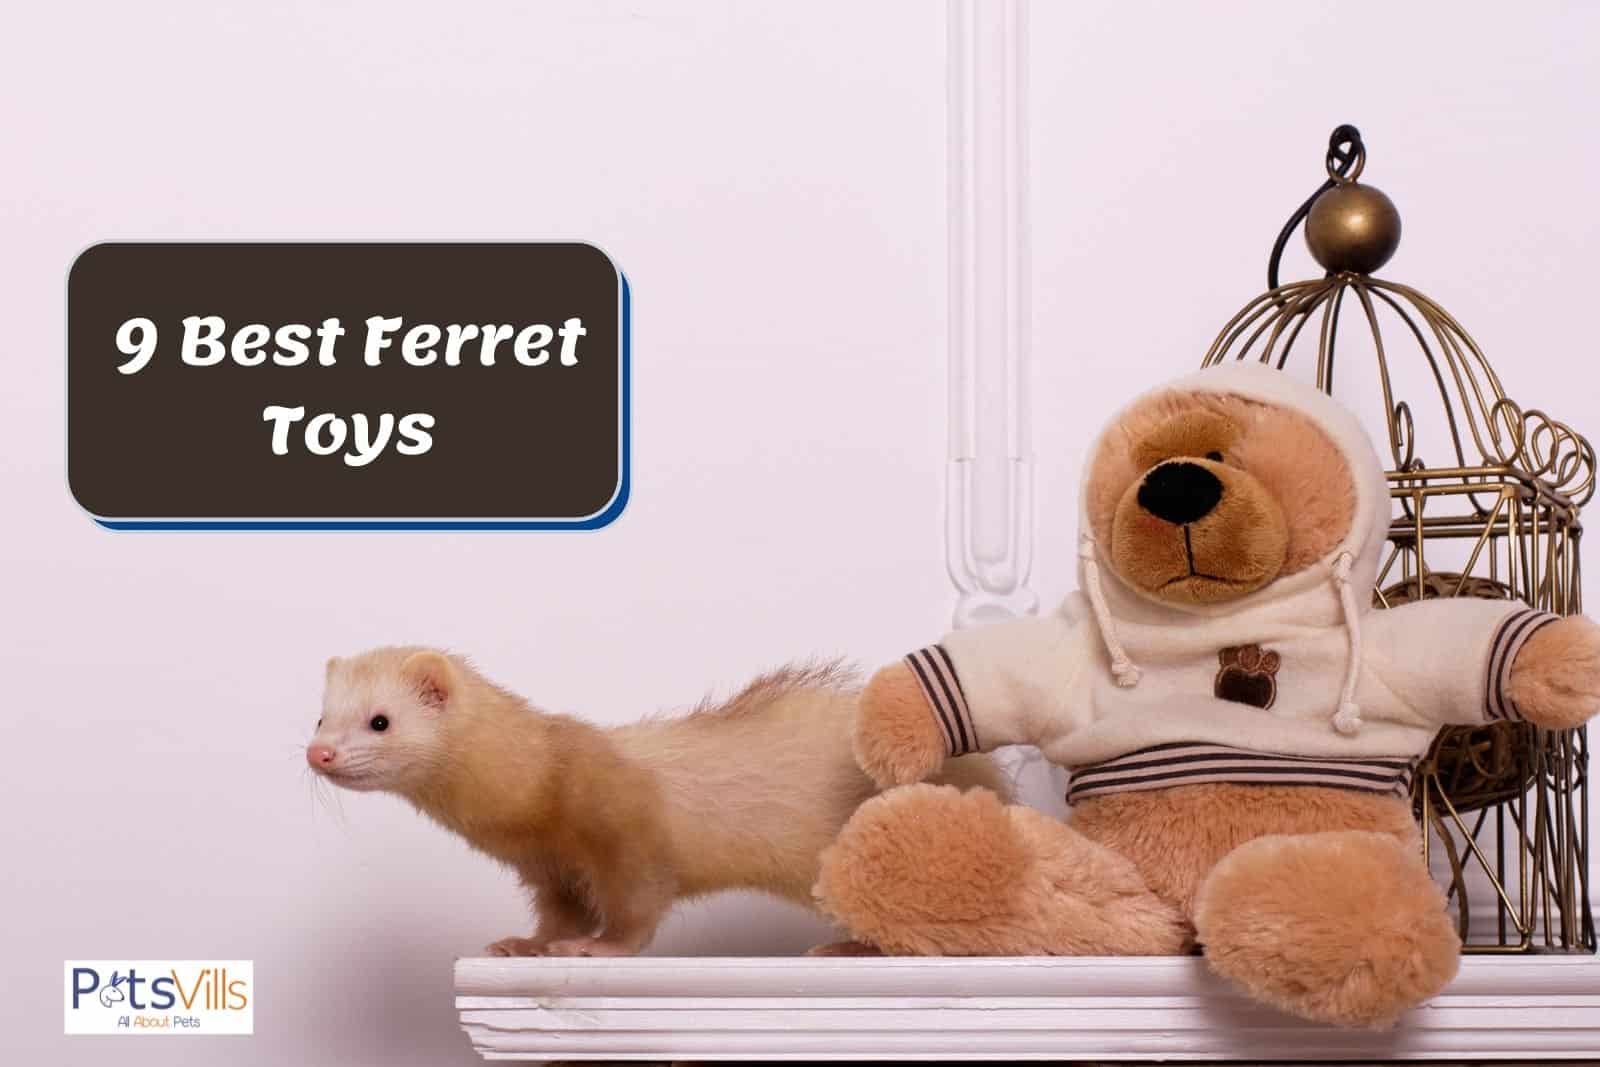 a ferret with toy teddy bear